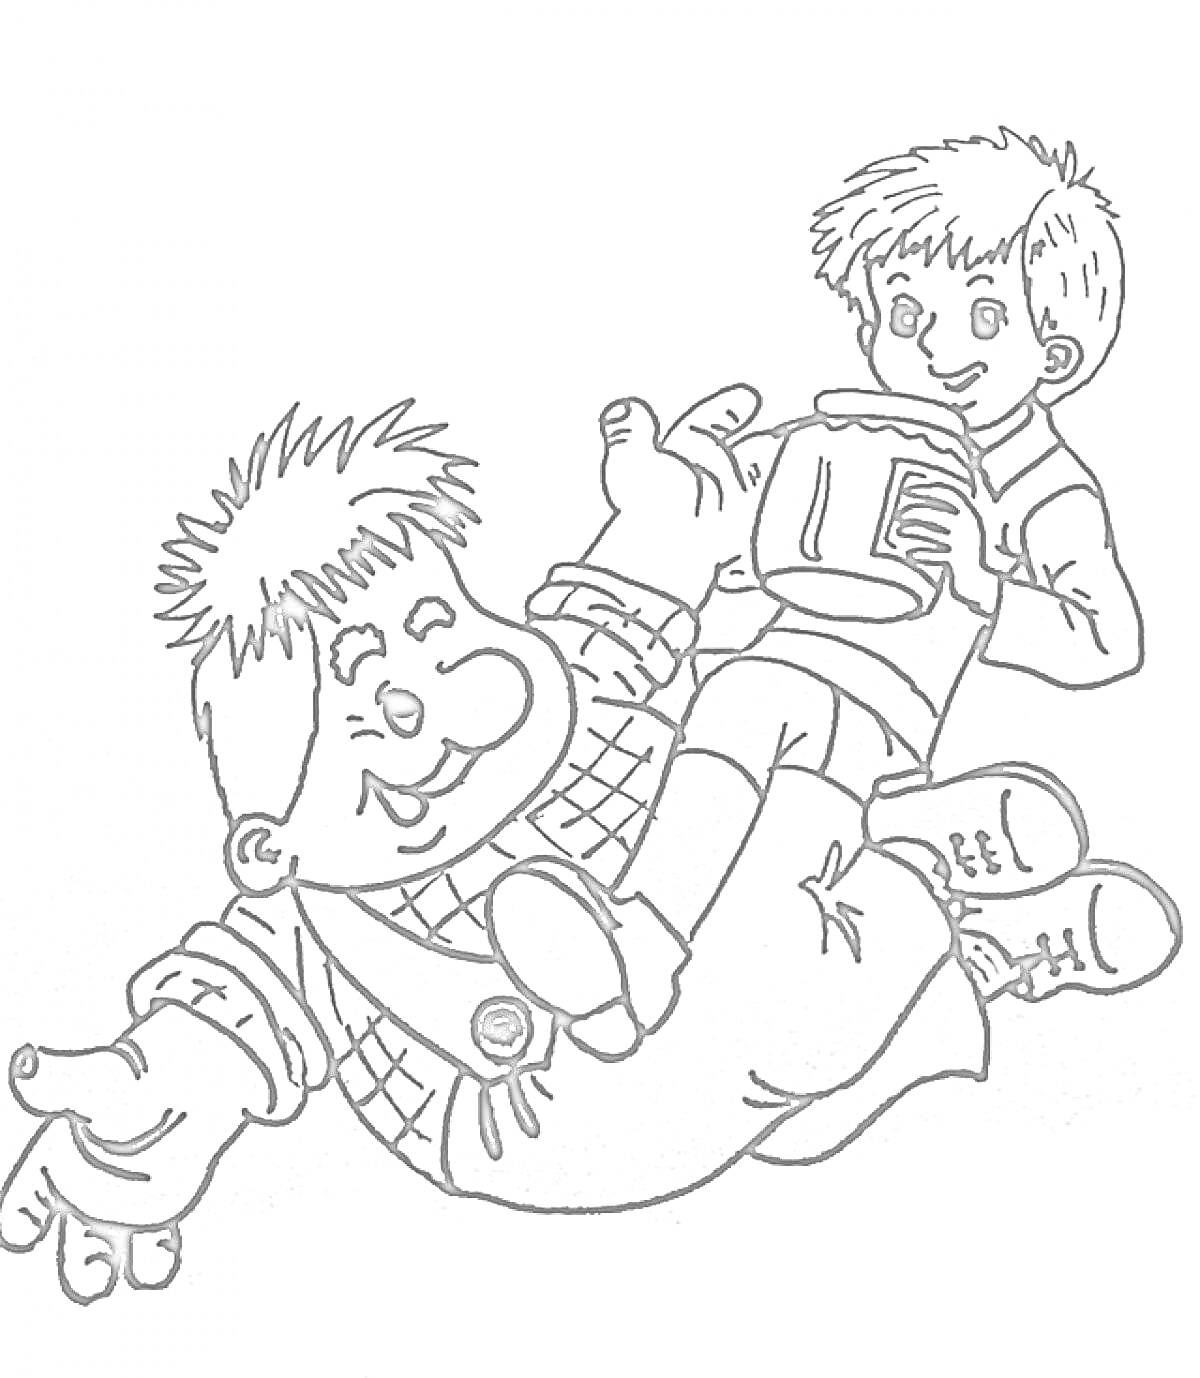 Раскраска Карлсон и мальчик, Карлсон лежит на боку, мальчик держит банку с вареньем